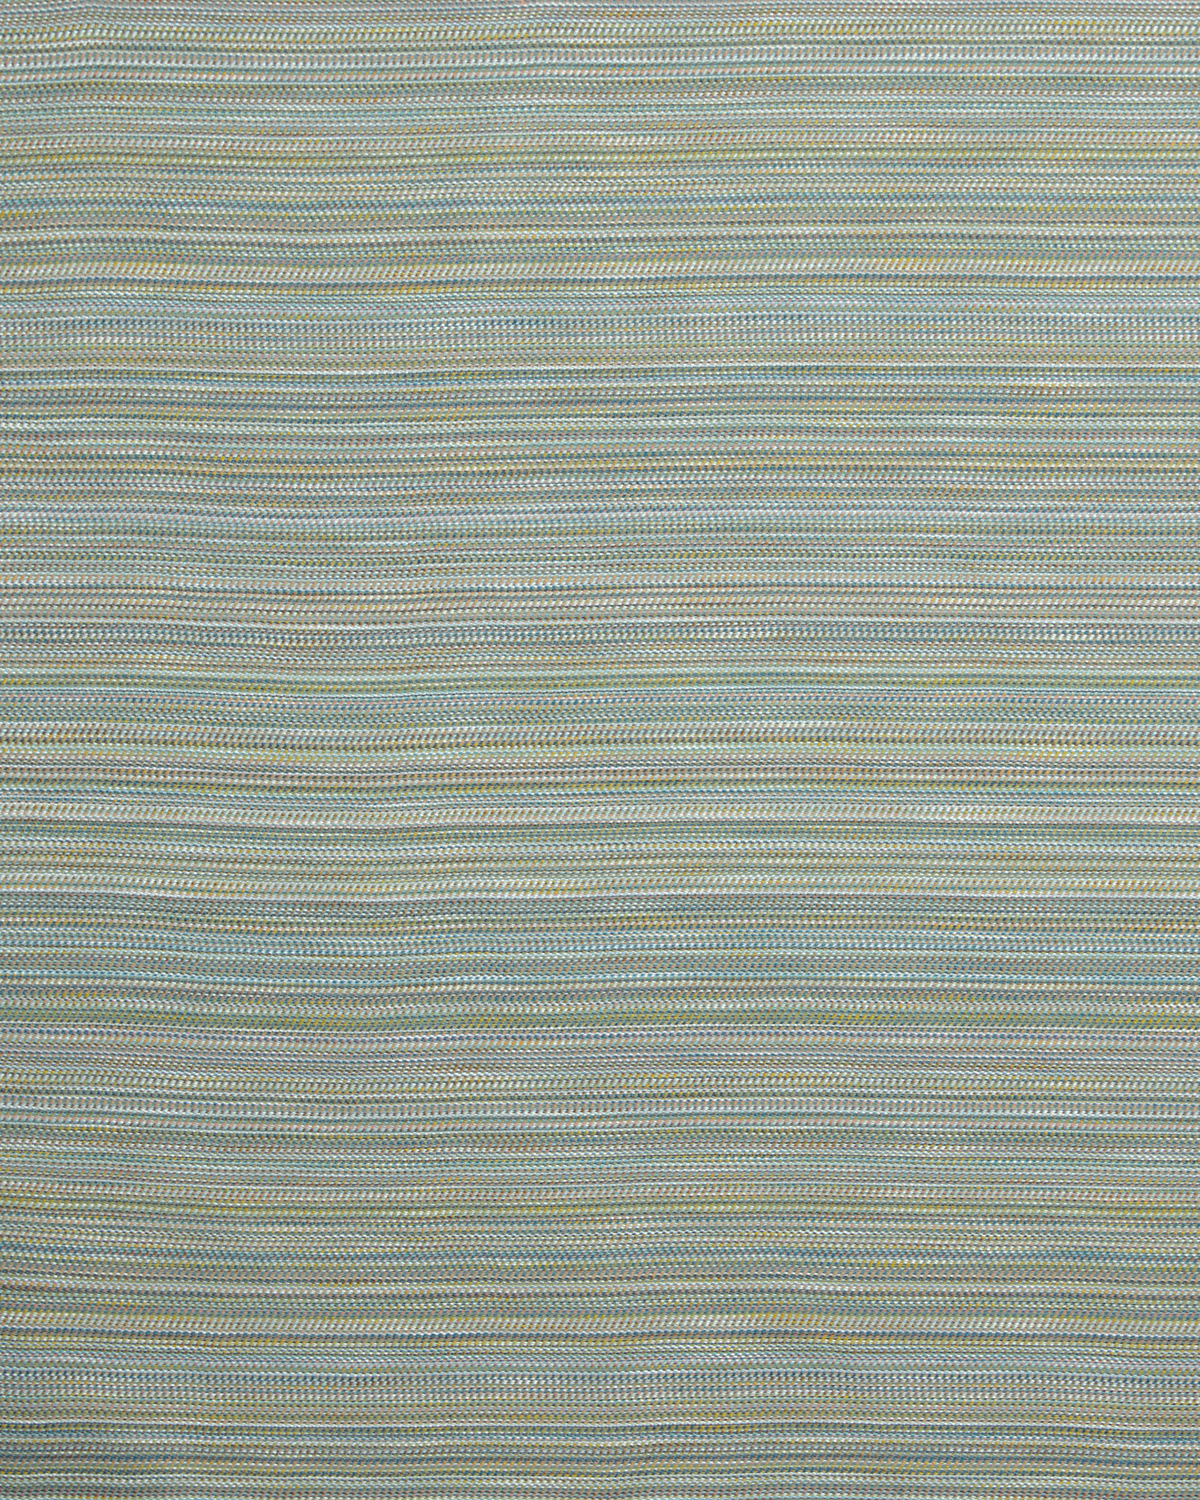 Horizon Fabric in Field